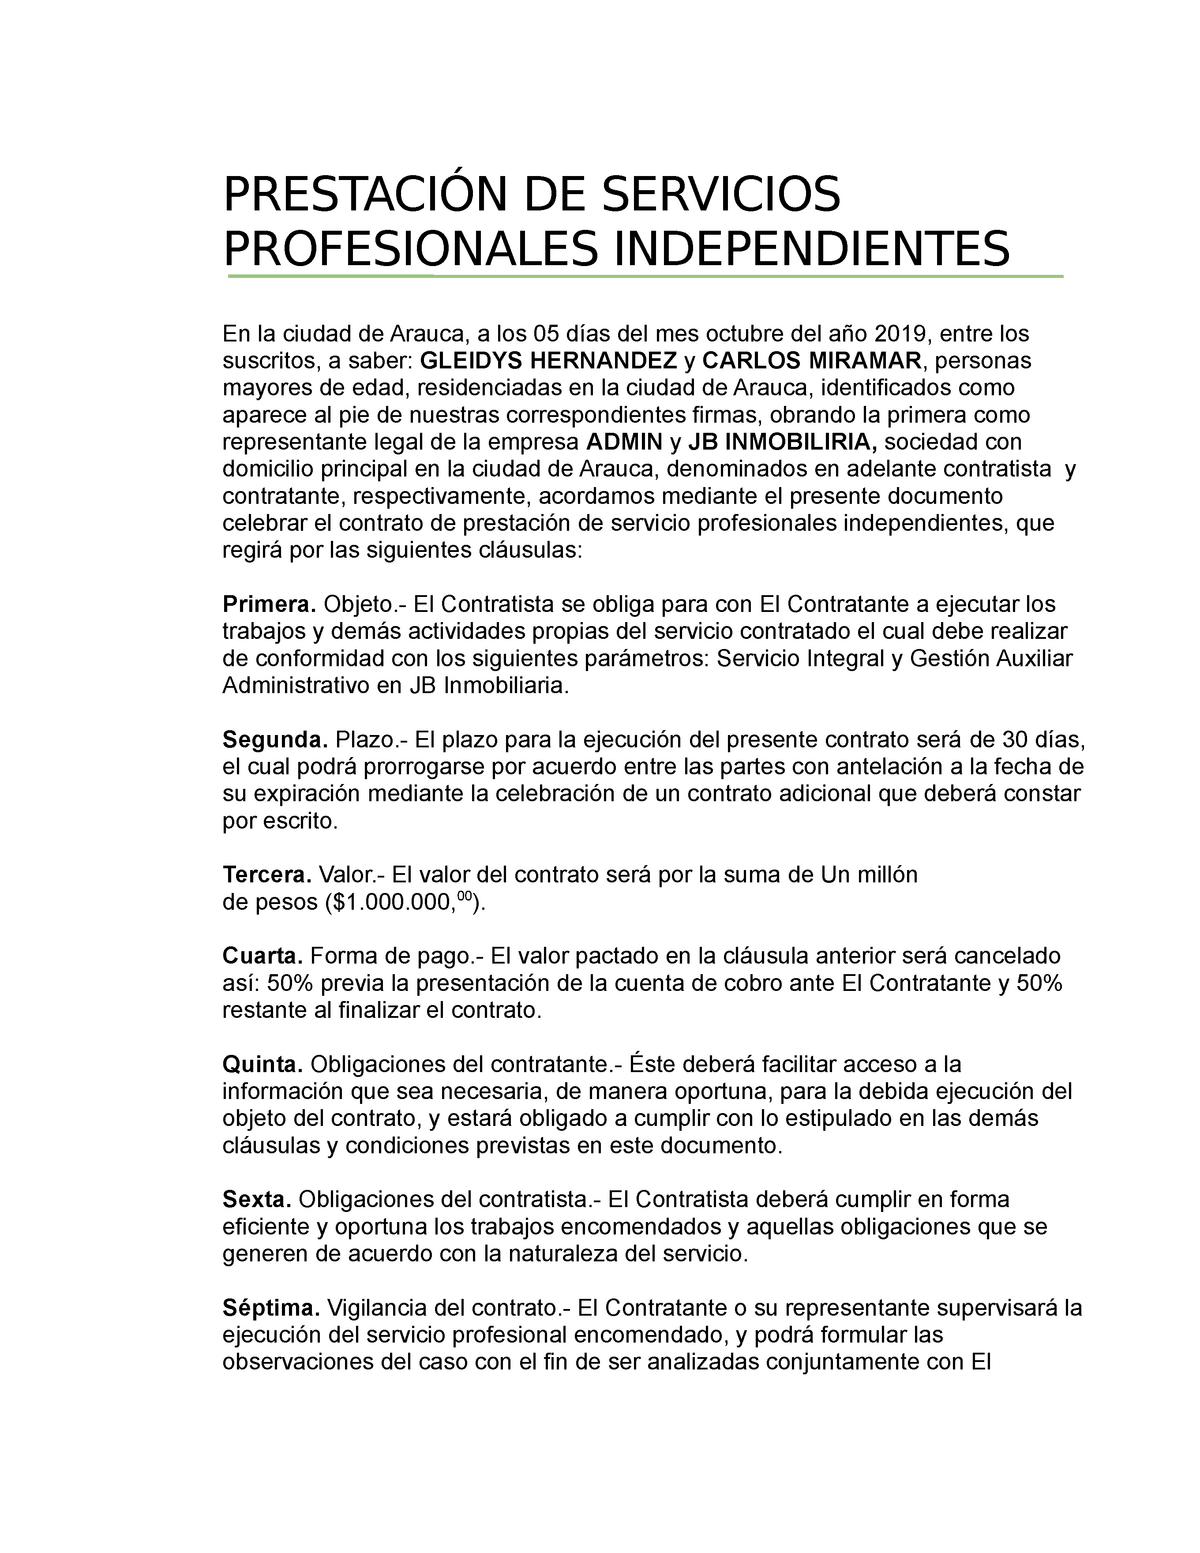 Gleidys contrato de servicios profesionales independientes - PRESTACIÓN DE SERVICIOS  PROFESIONALES - Studocu